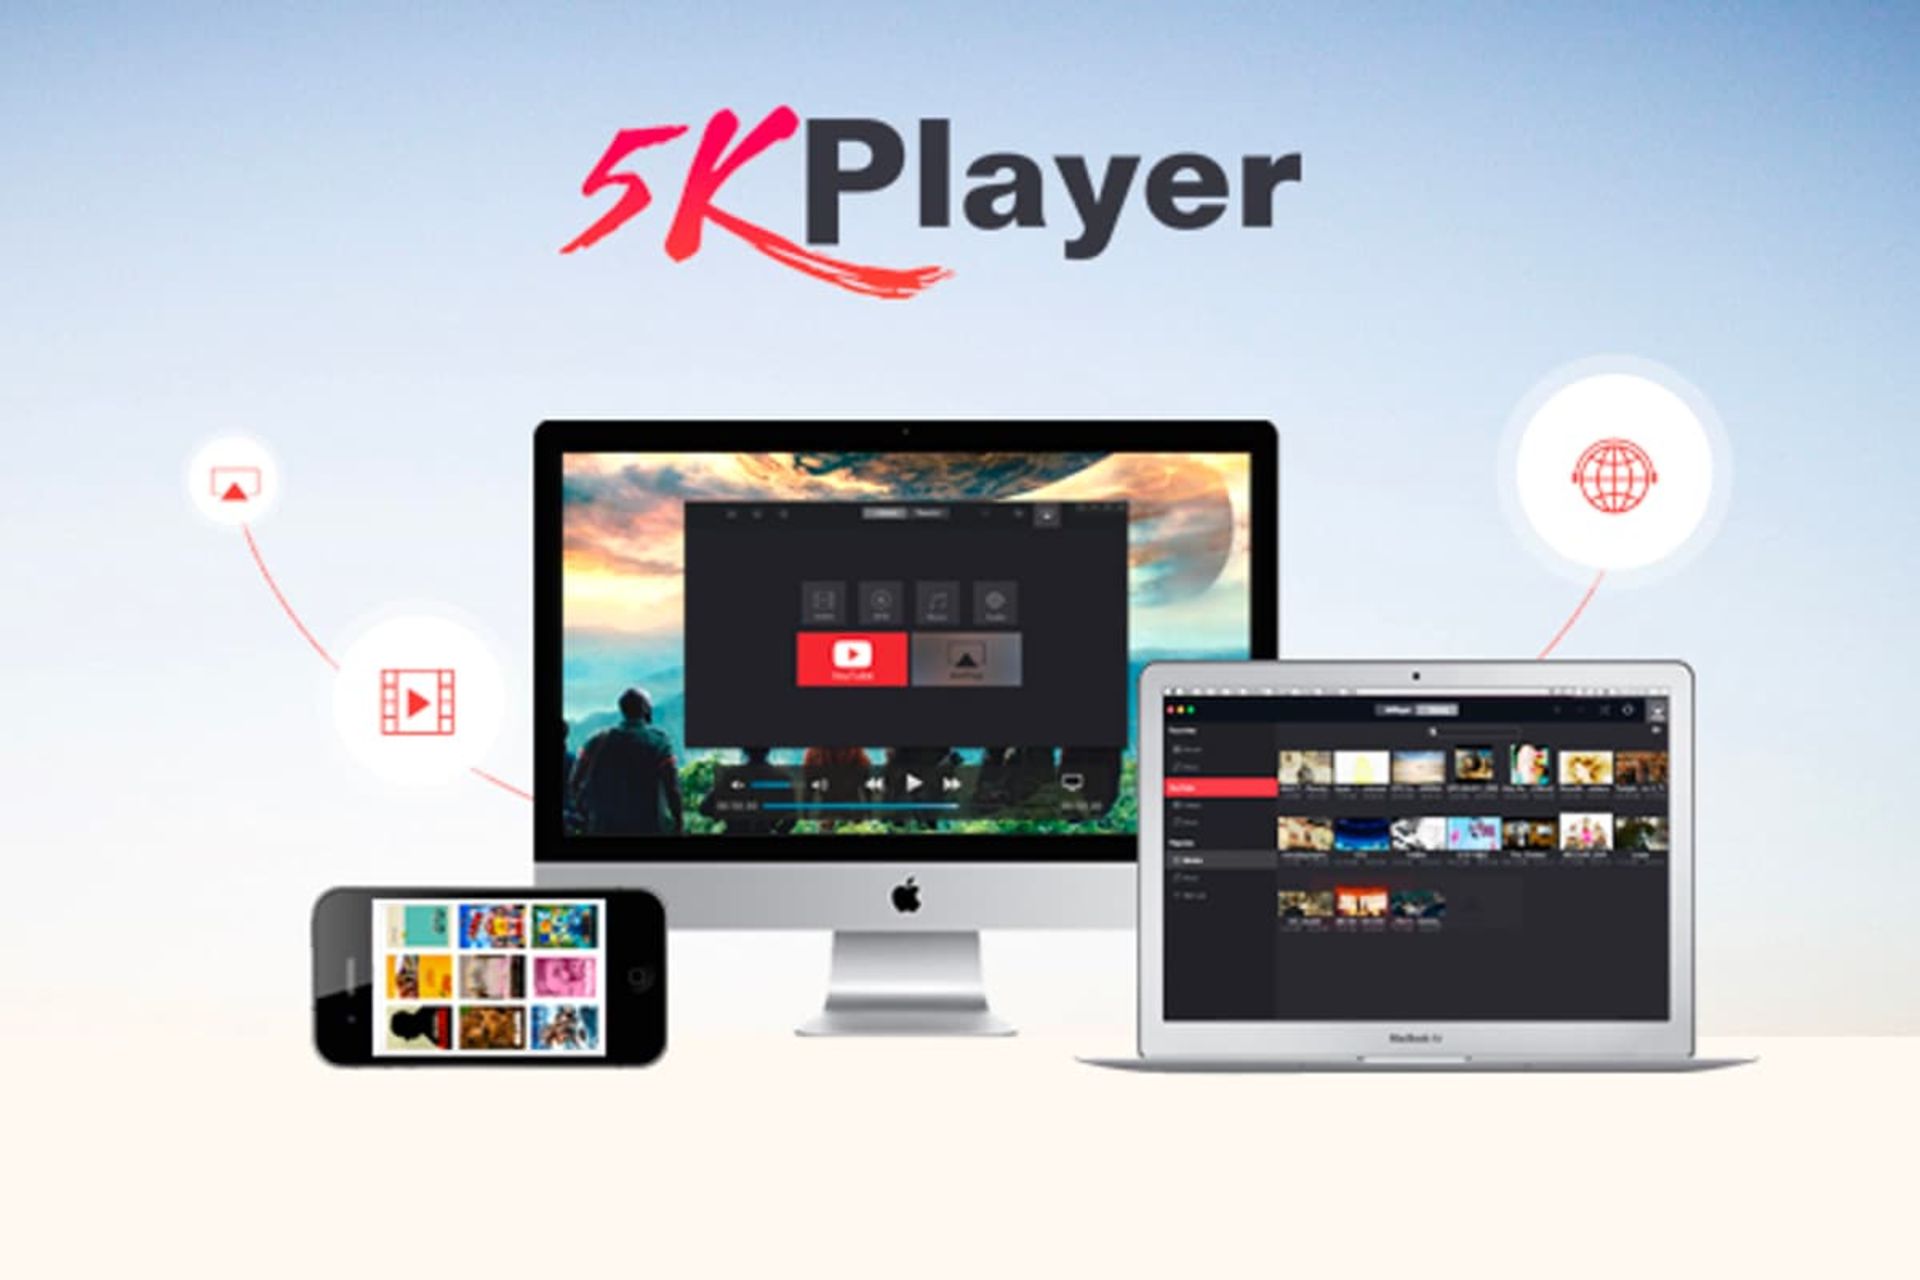 نرم افزار 5KPlayer روی لپ تاپ و موبایل و مانیتور